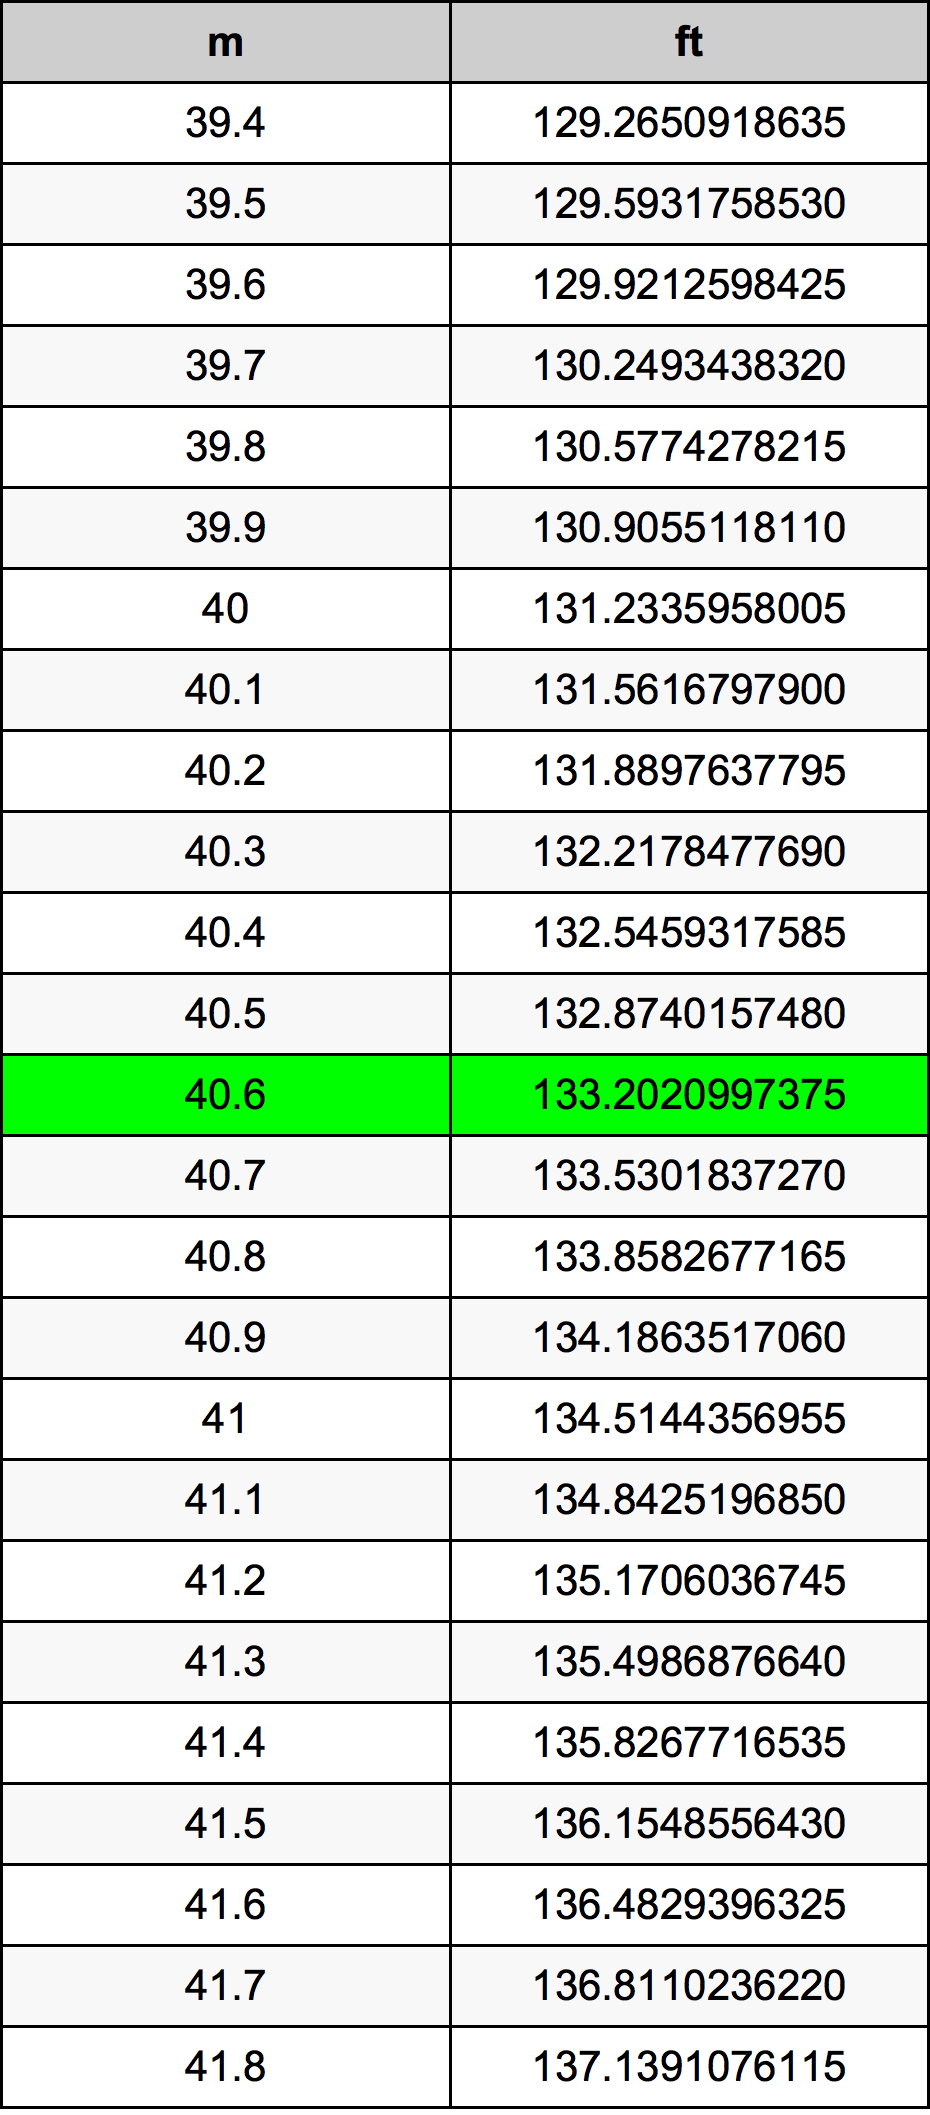 40.6 Metru tabelul de conversie